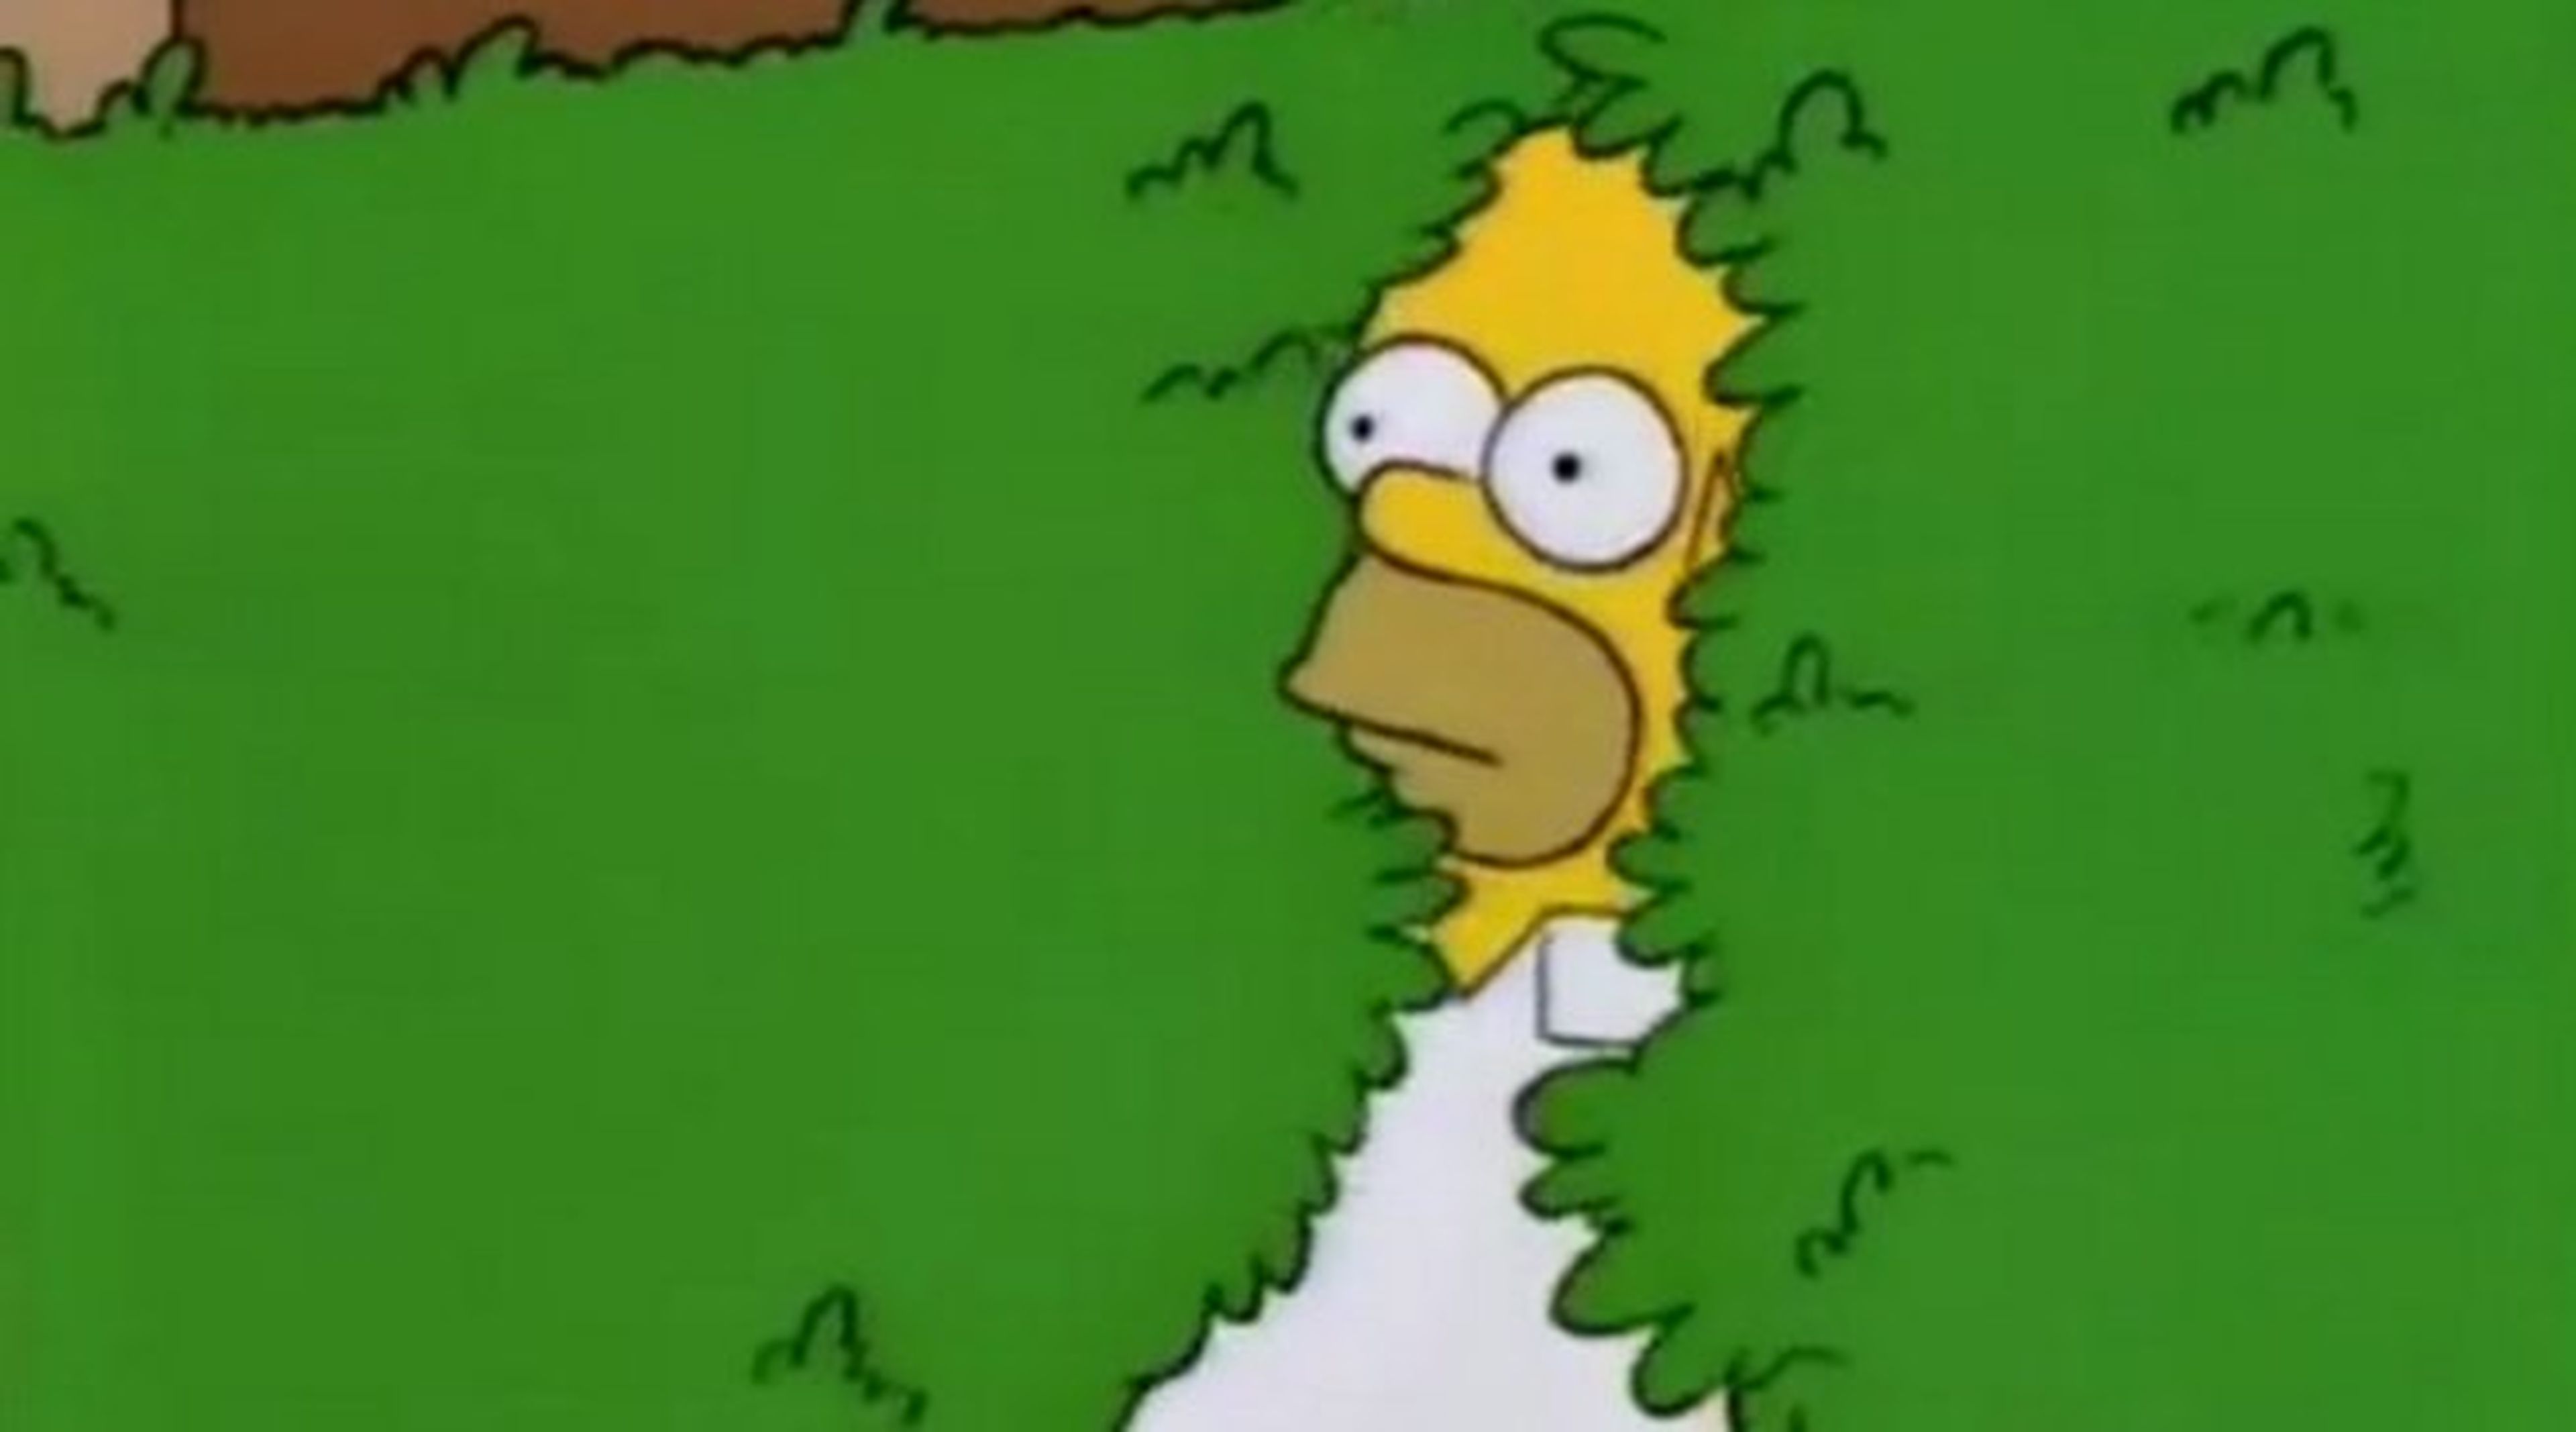 Los Simpson - Homer y el meme del arbusto